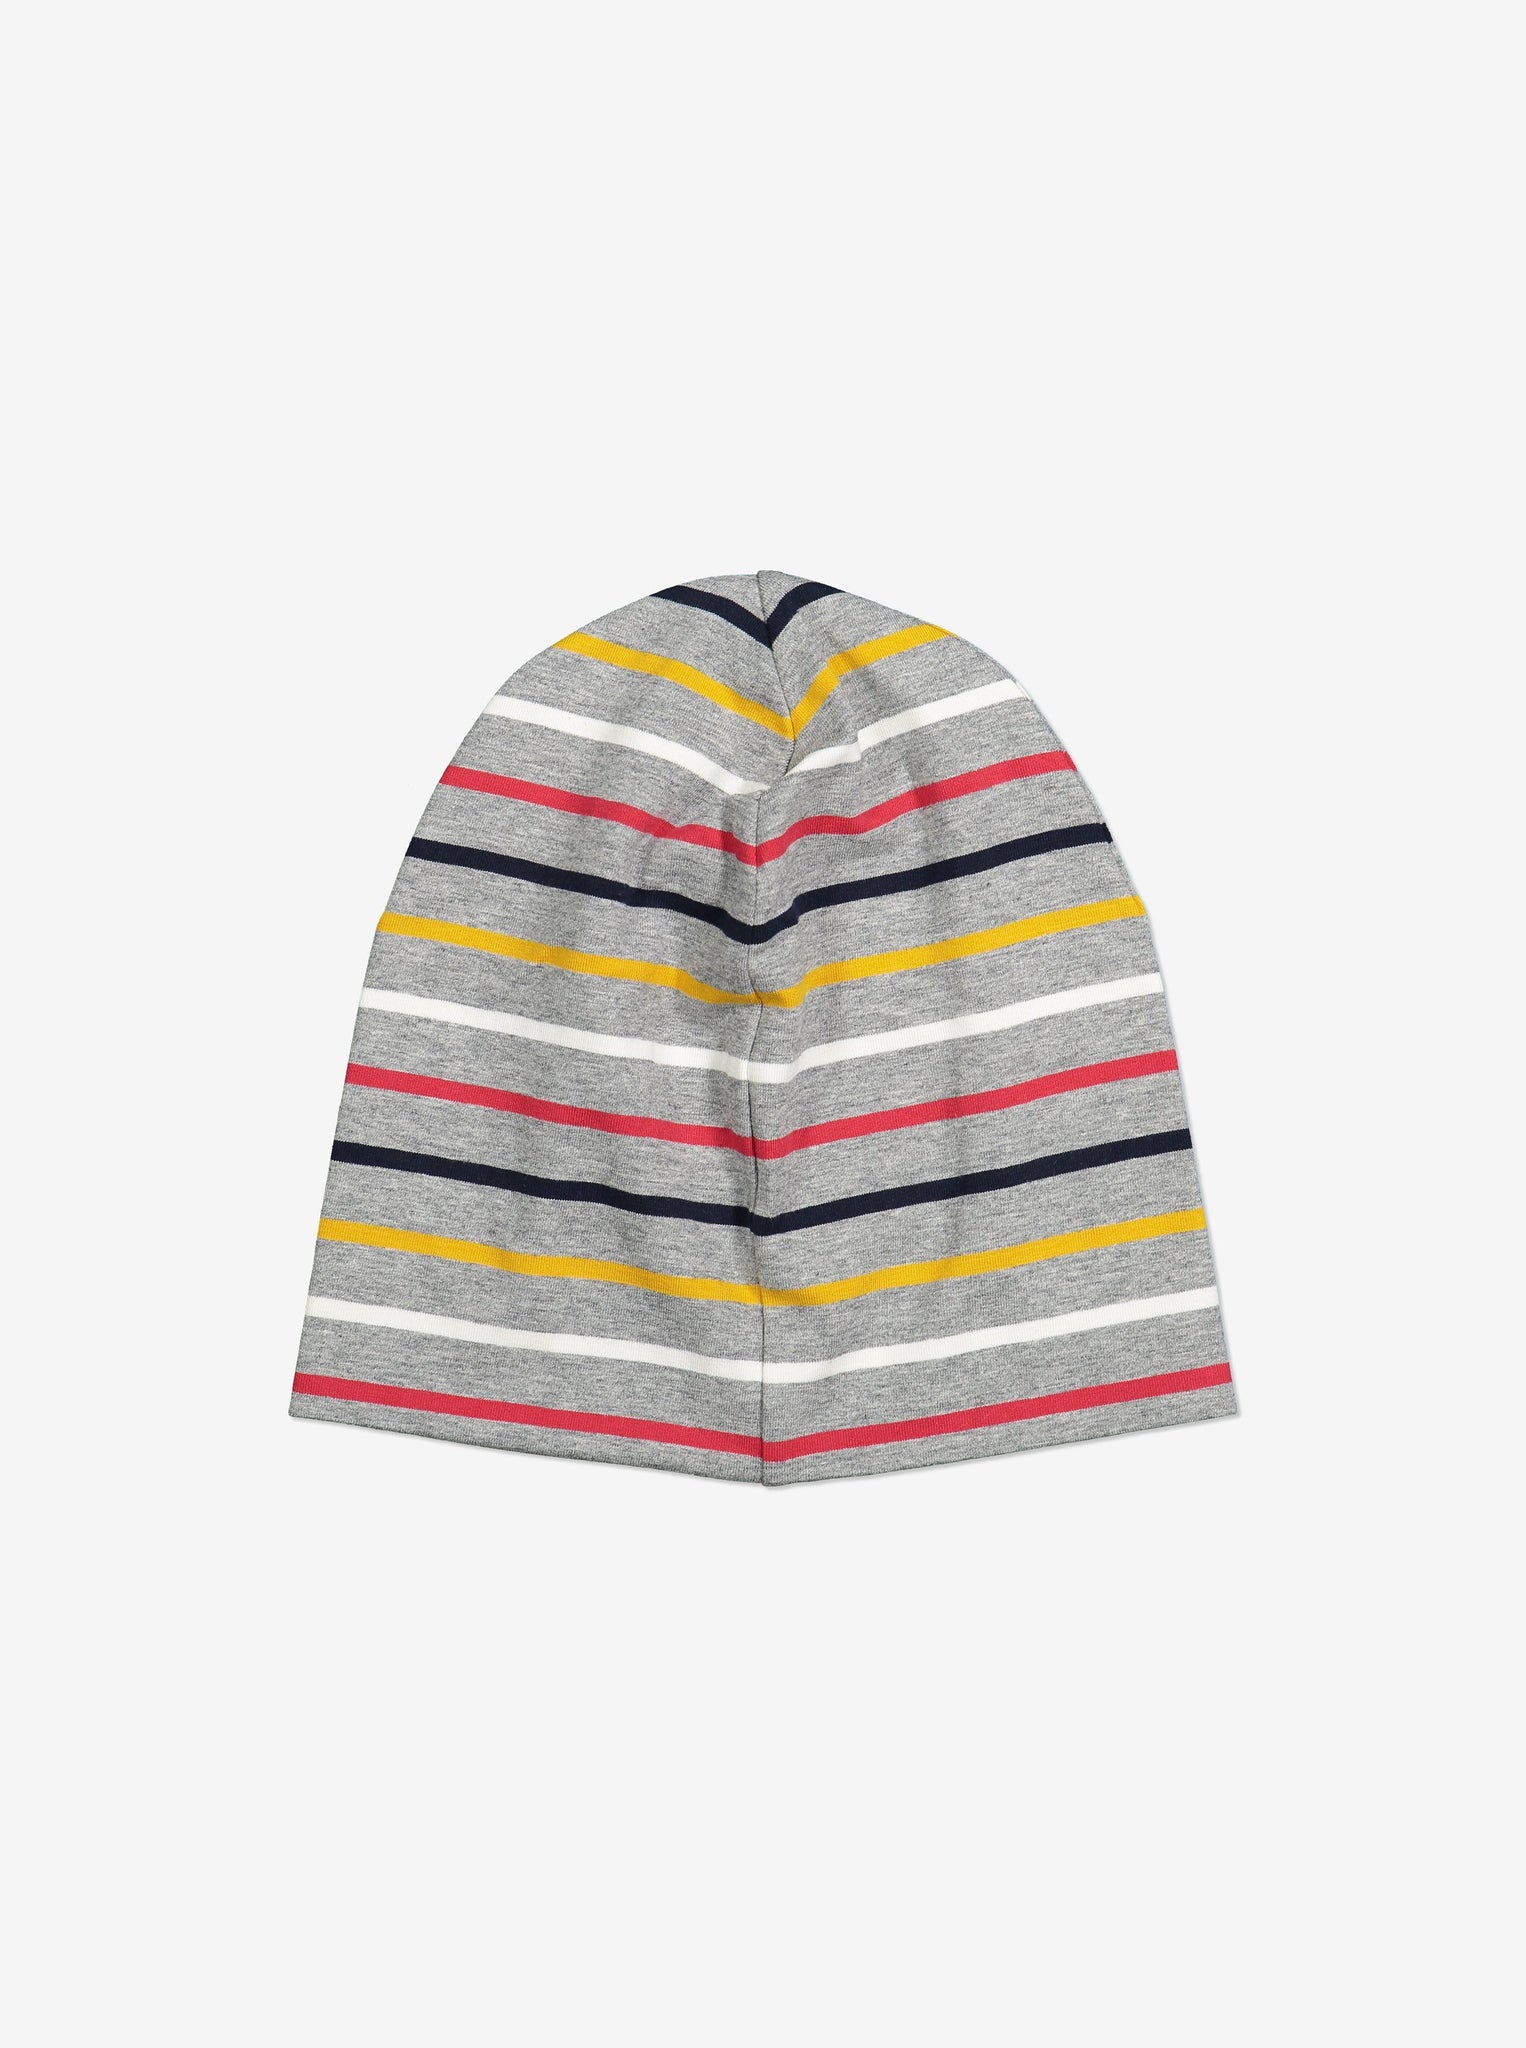 Striped Kids Beanie Hat-9m-12y-Grey-Unisex